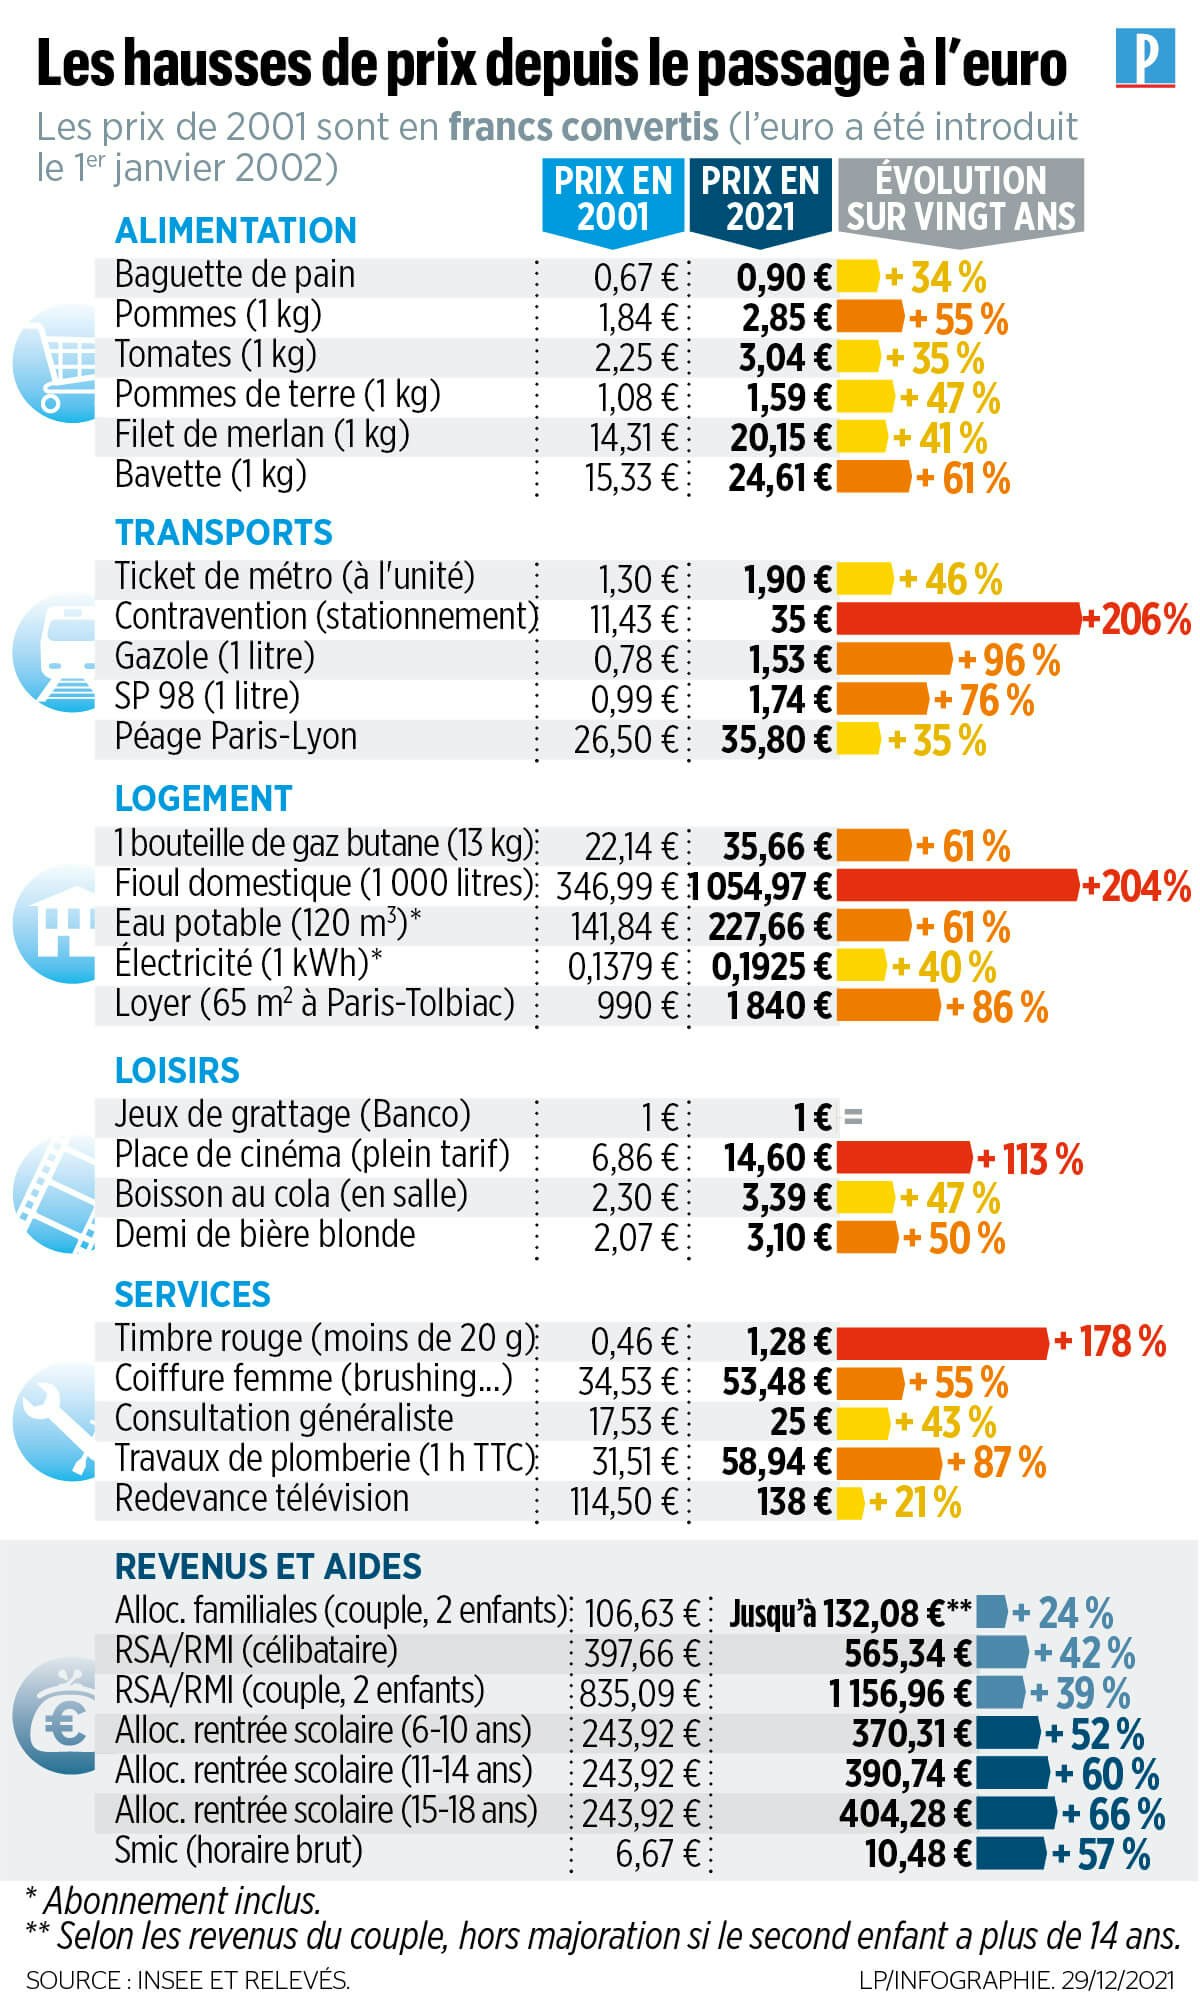 infographie sur l'évolution des prix en France entre 2001 et 2021